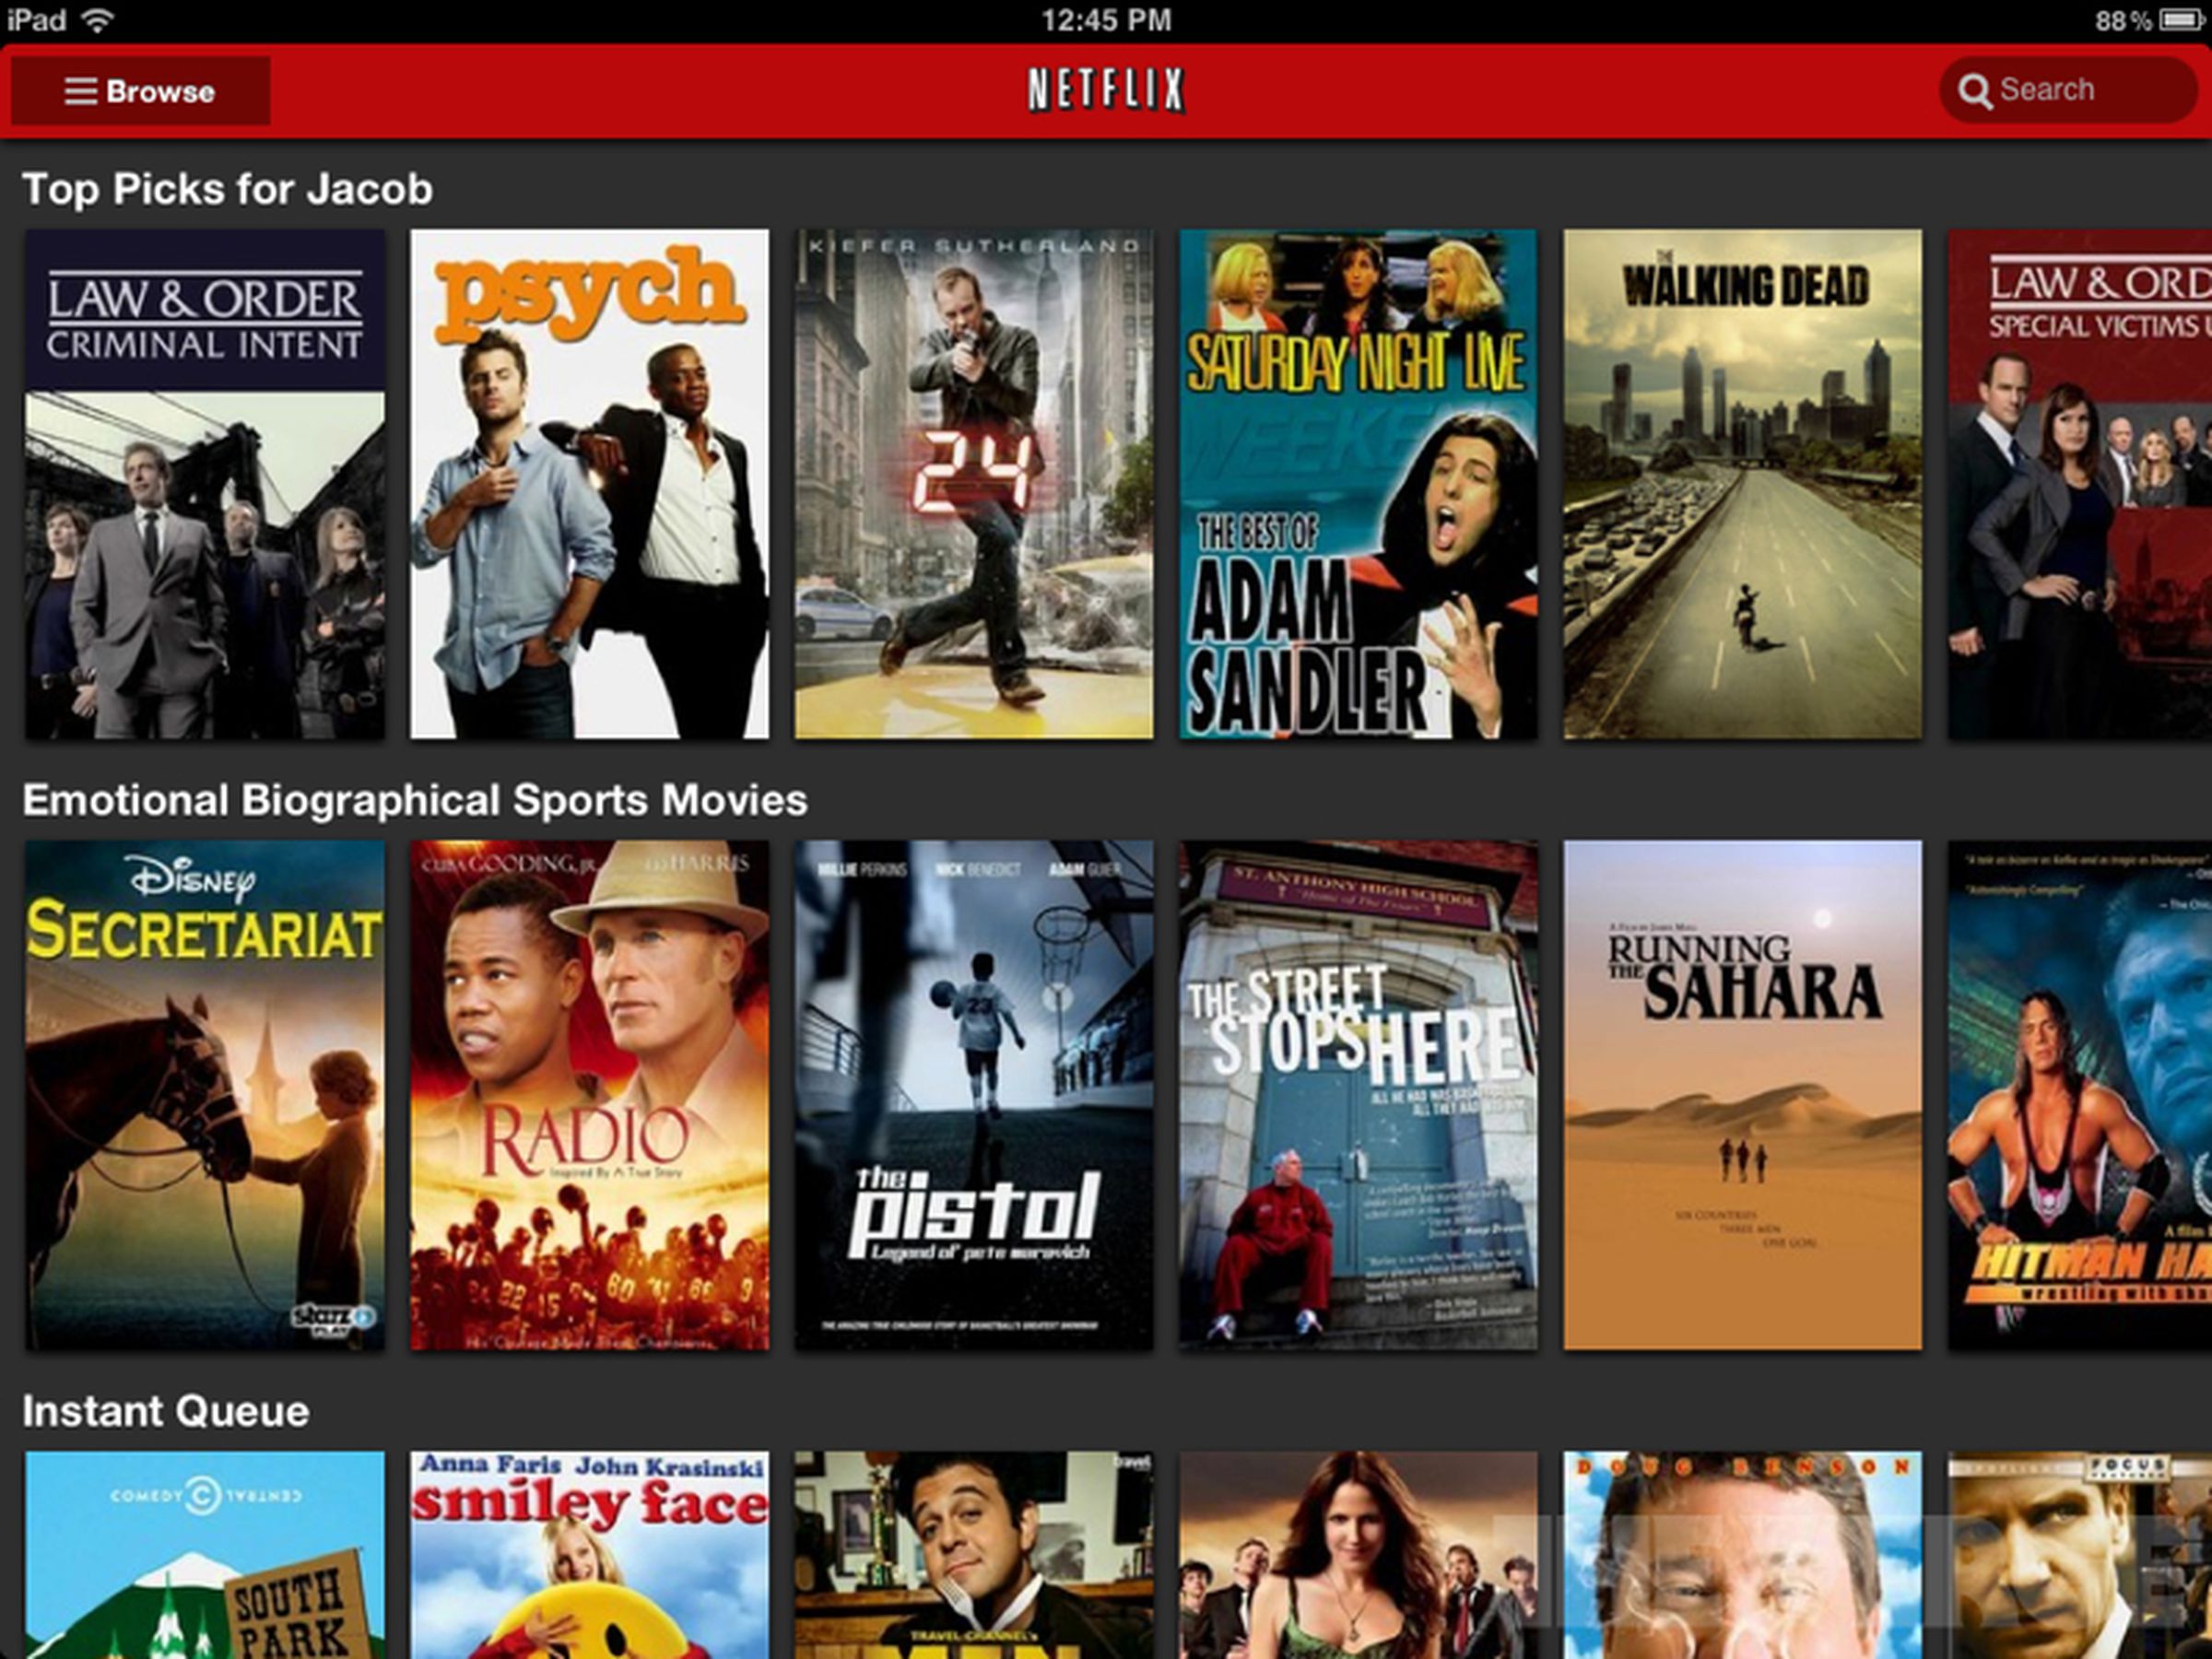 Netflix iPad app redesign